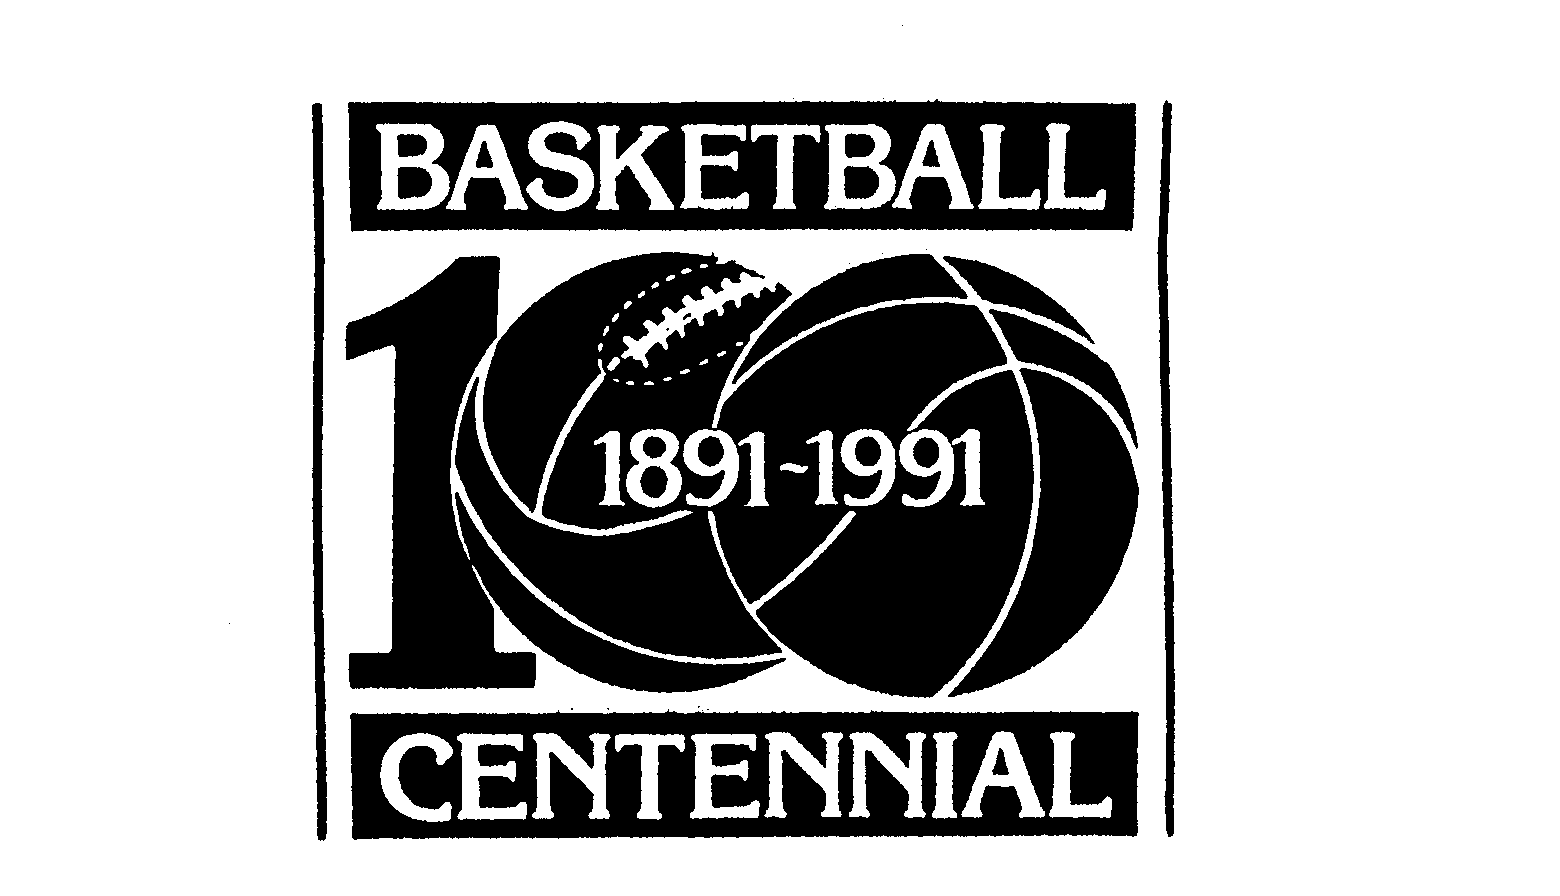  BASKETBALL CENTENNIAL 100 1891-1991